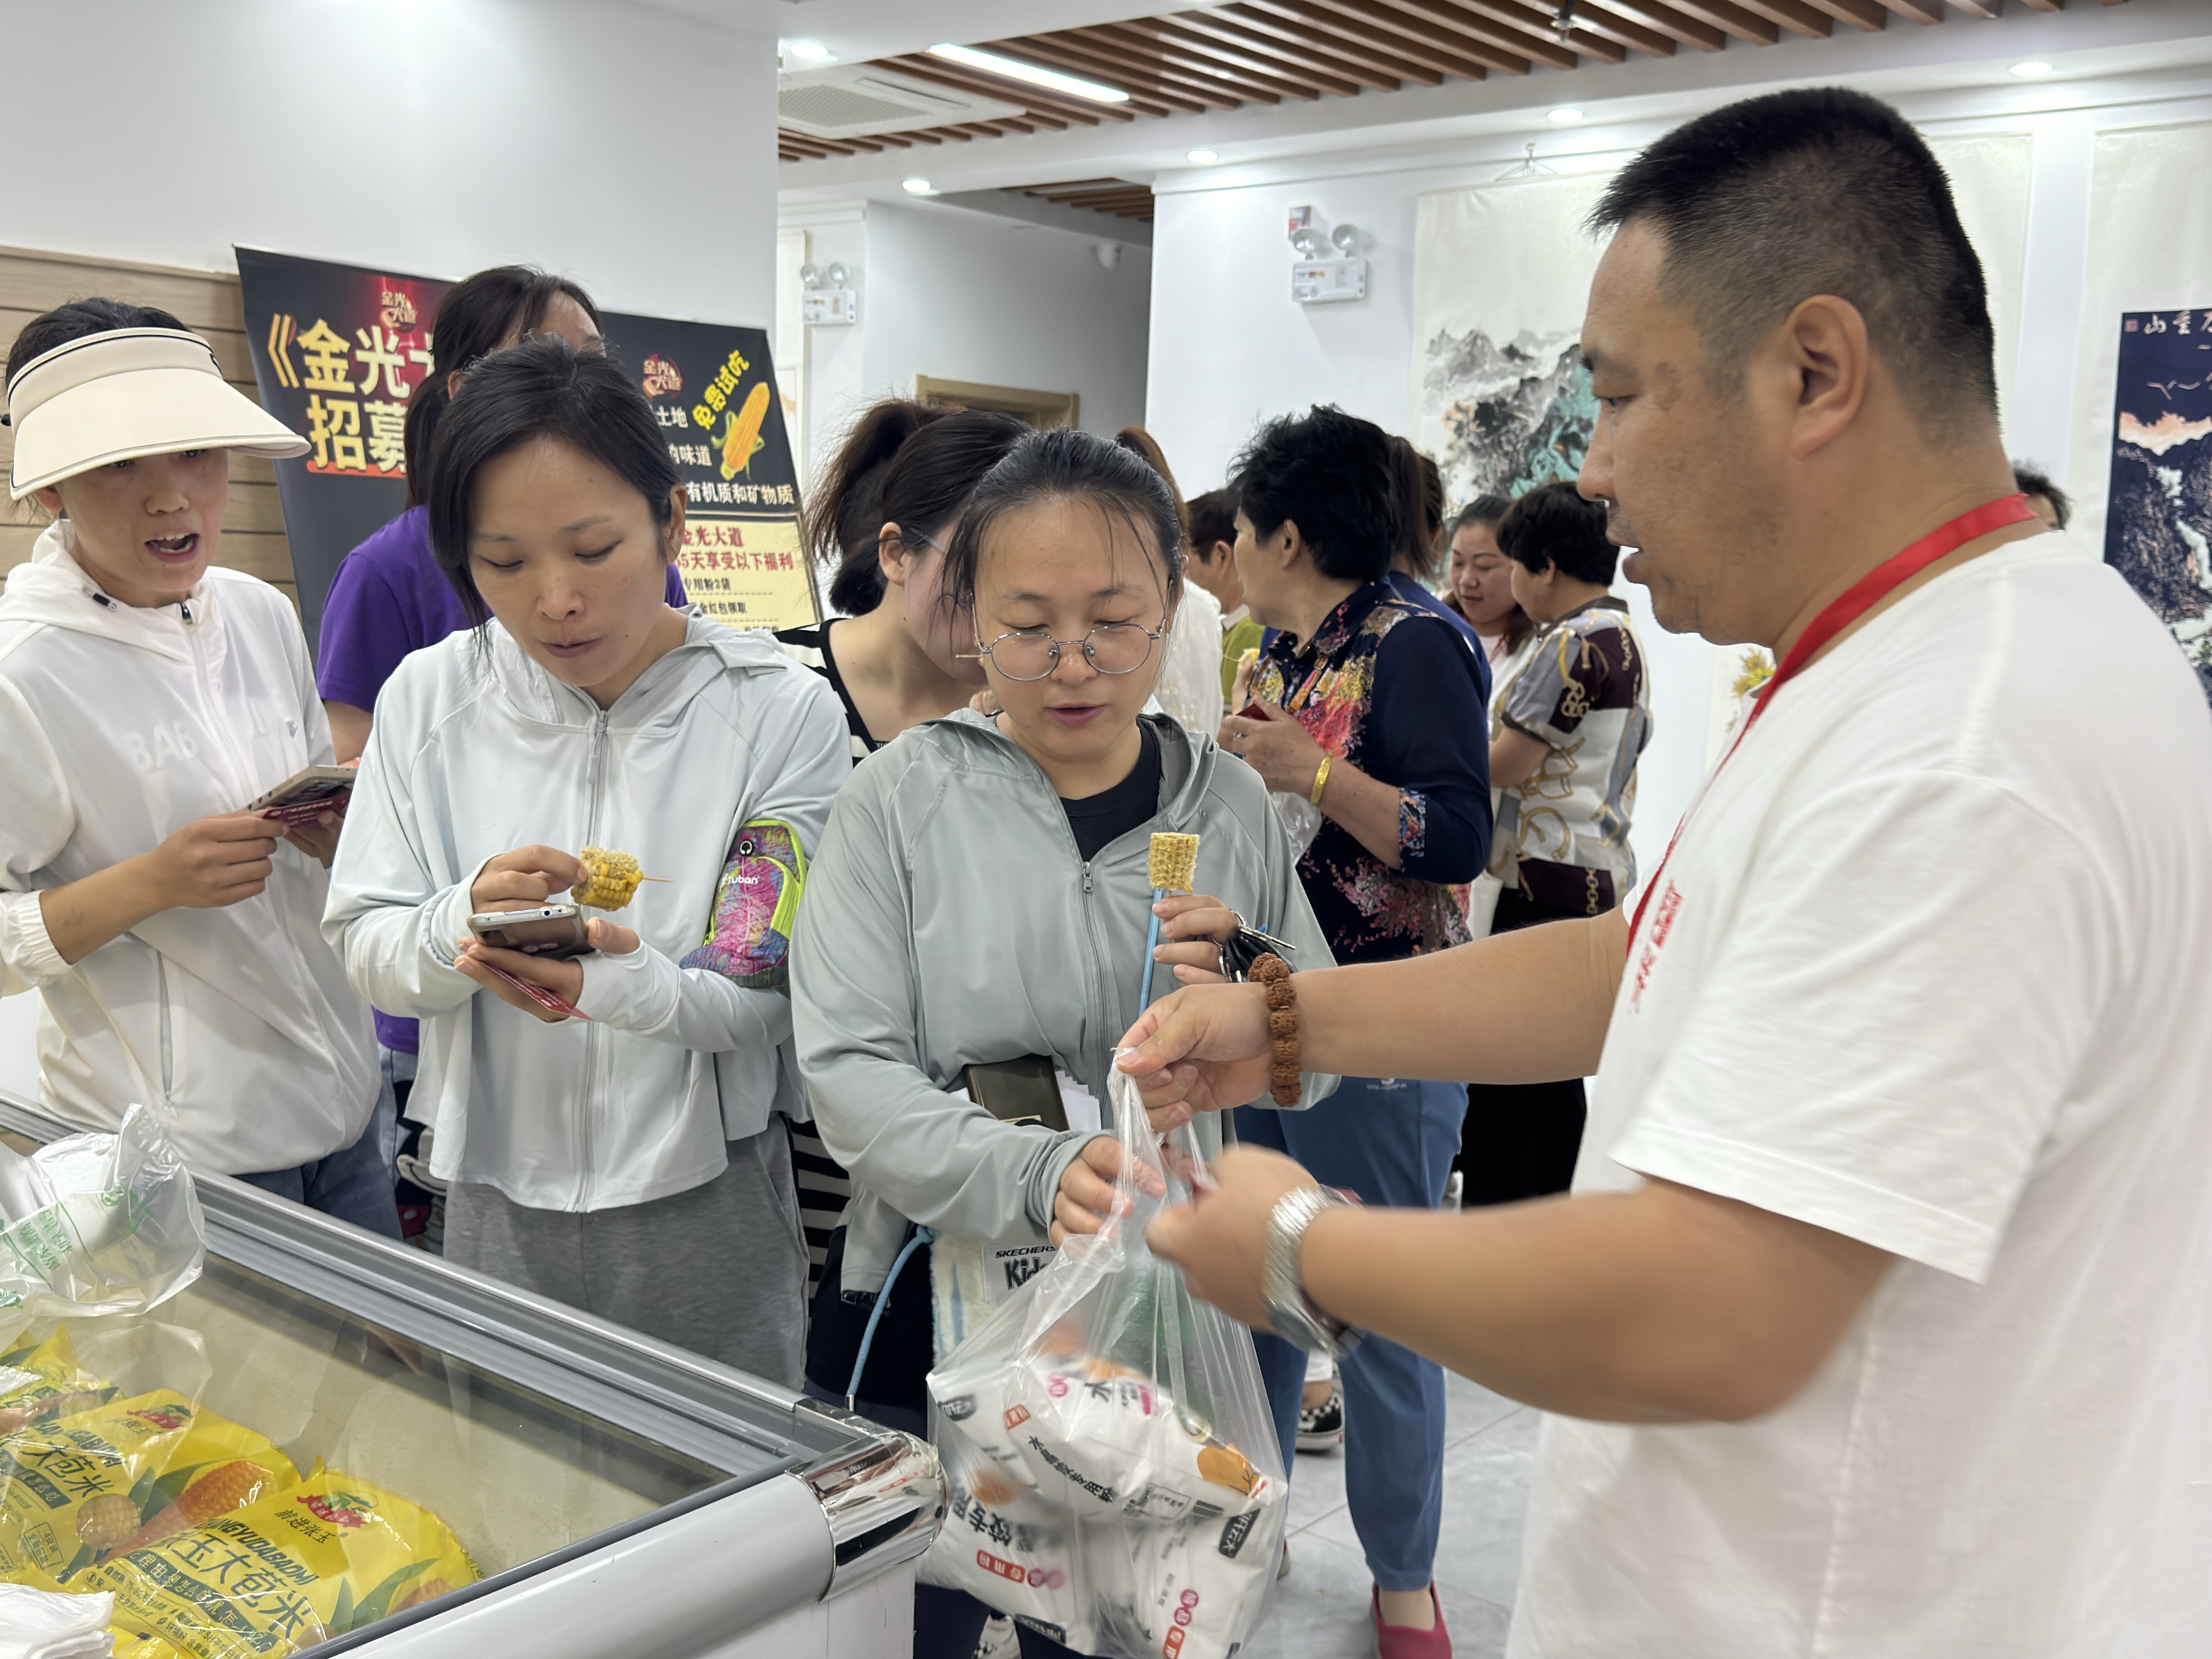 市中区十六里河街道福康社区举办端午美食每刻品鉴沙龙活动